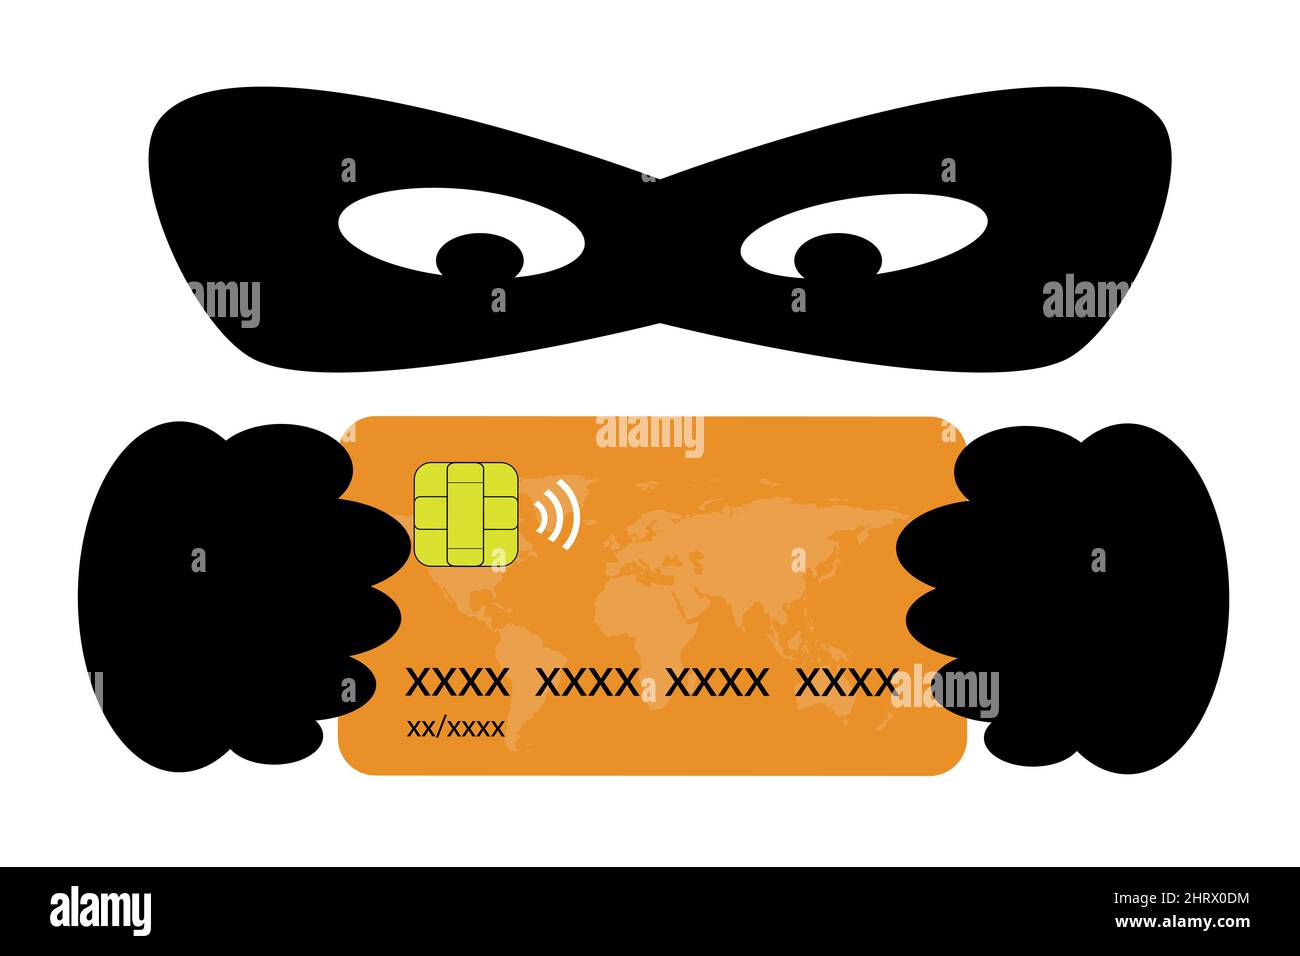 Phishing-Konzept. Dieb mit einer Maske hinter einer Kreditkarte. Betrug und Diebstahl von Bankdaten Stock Vektor